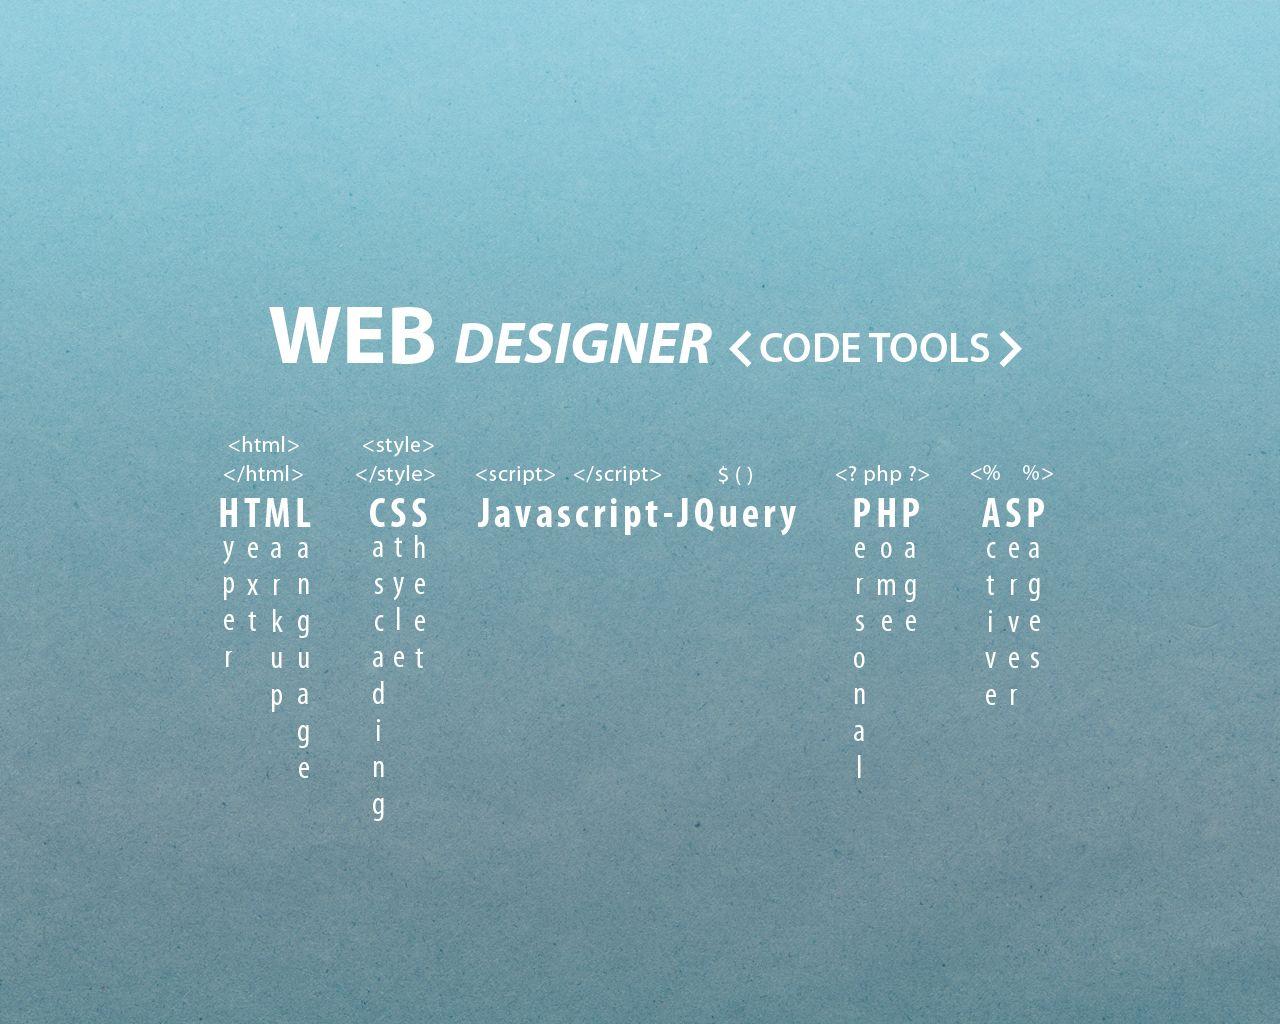 web designer code tools wallpaper